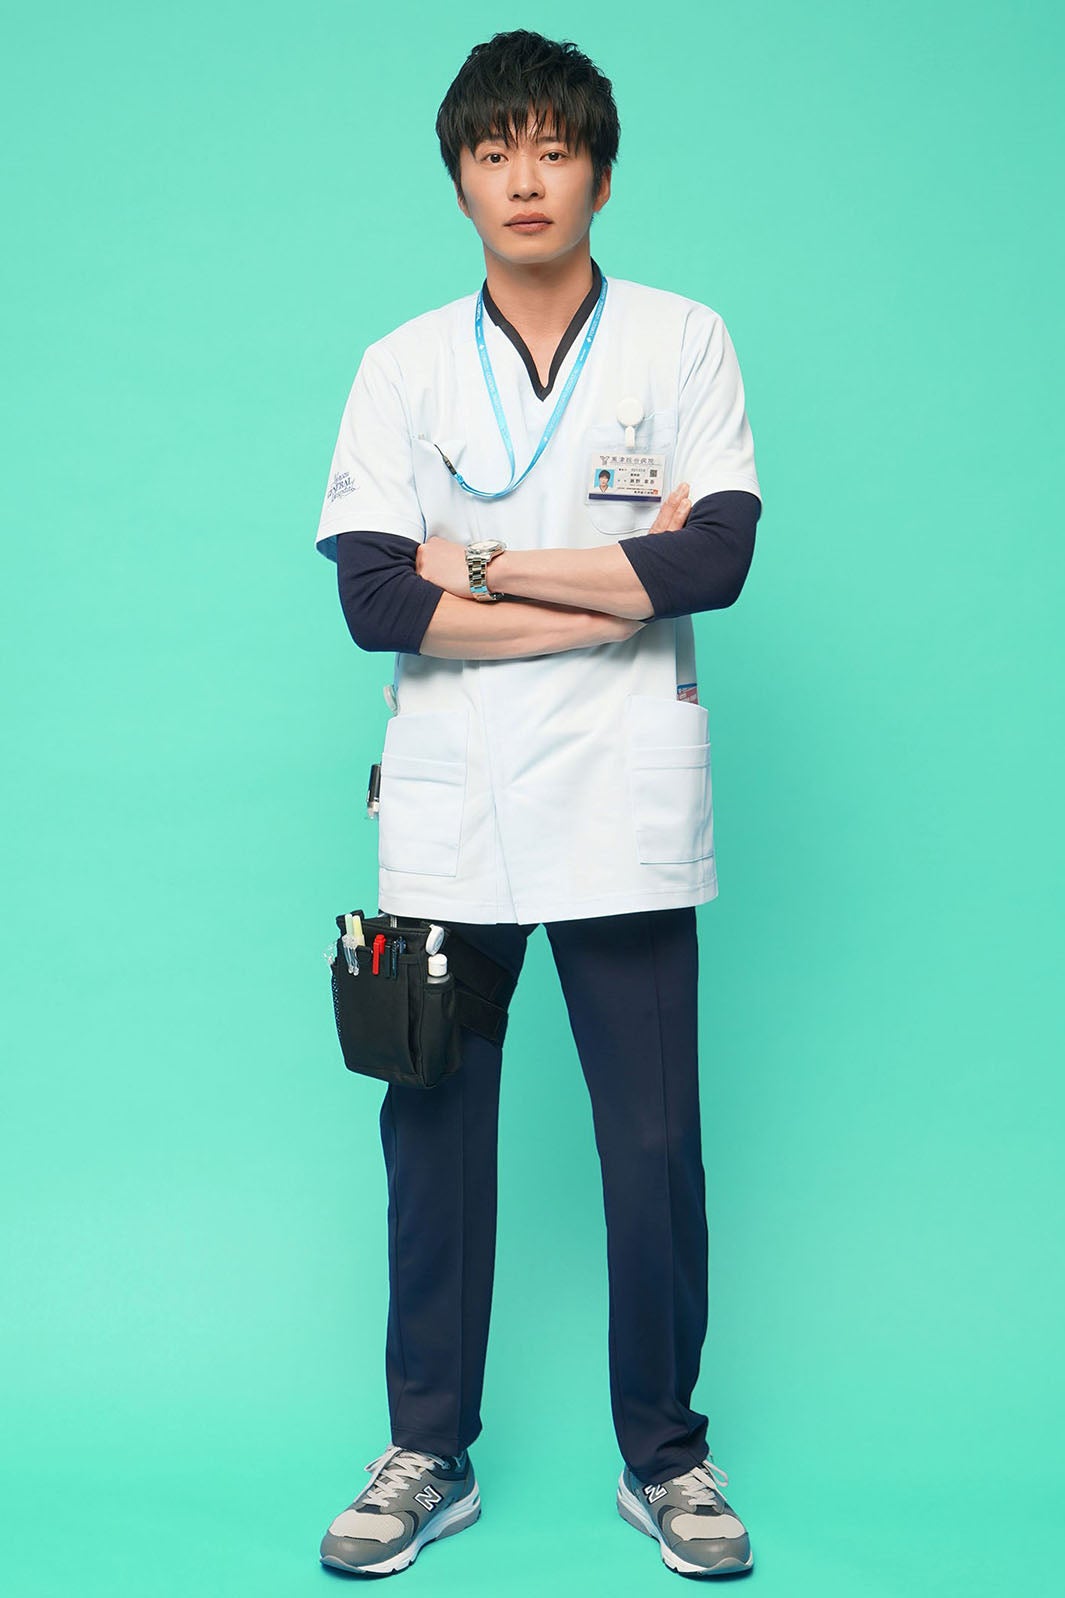 田中圭、石原さとみの先輩薬剤師役で「アンサング・シンデレラ」出演